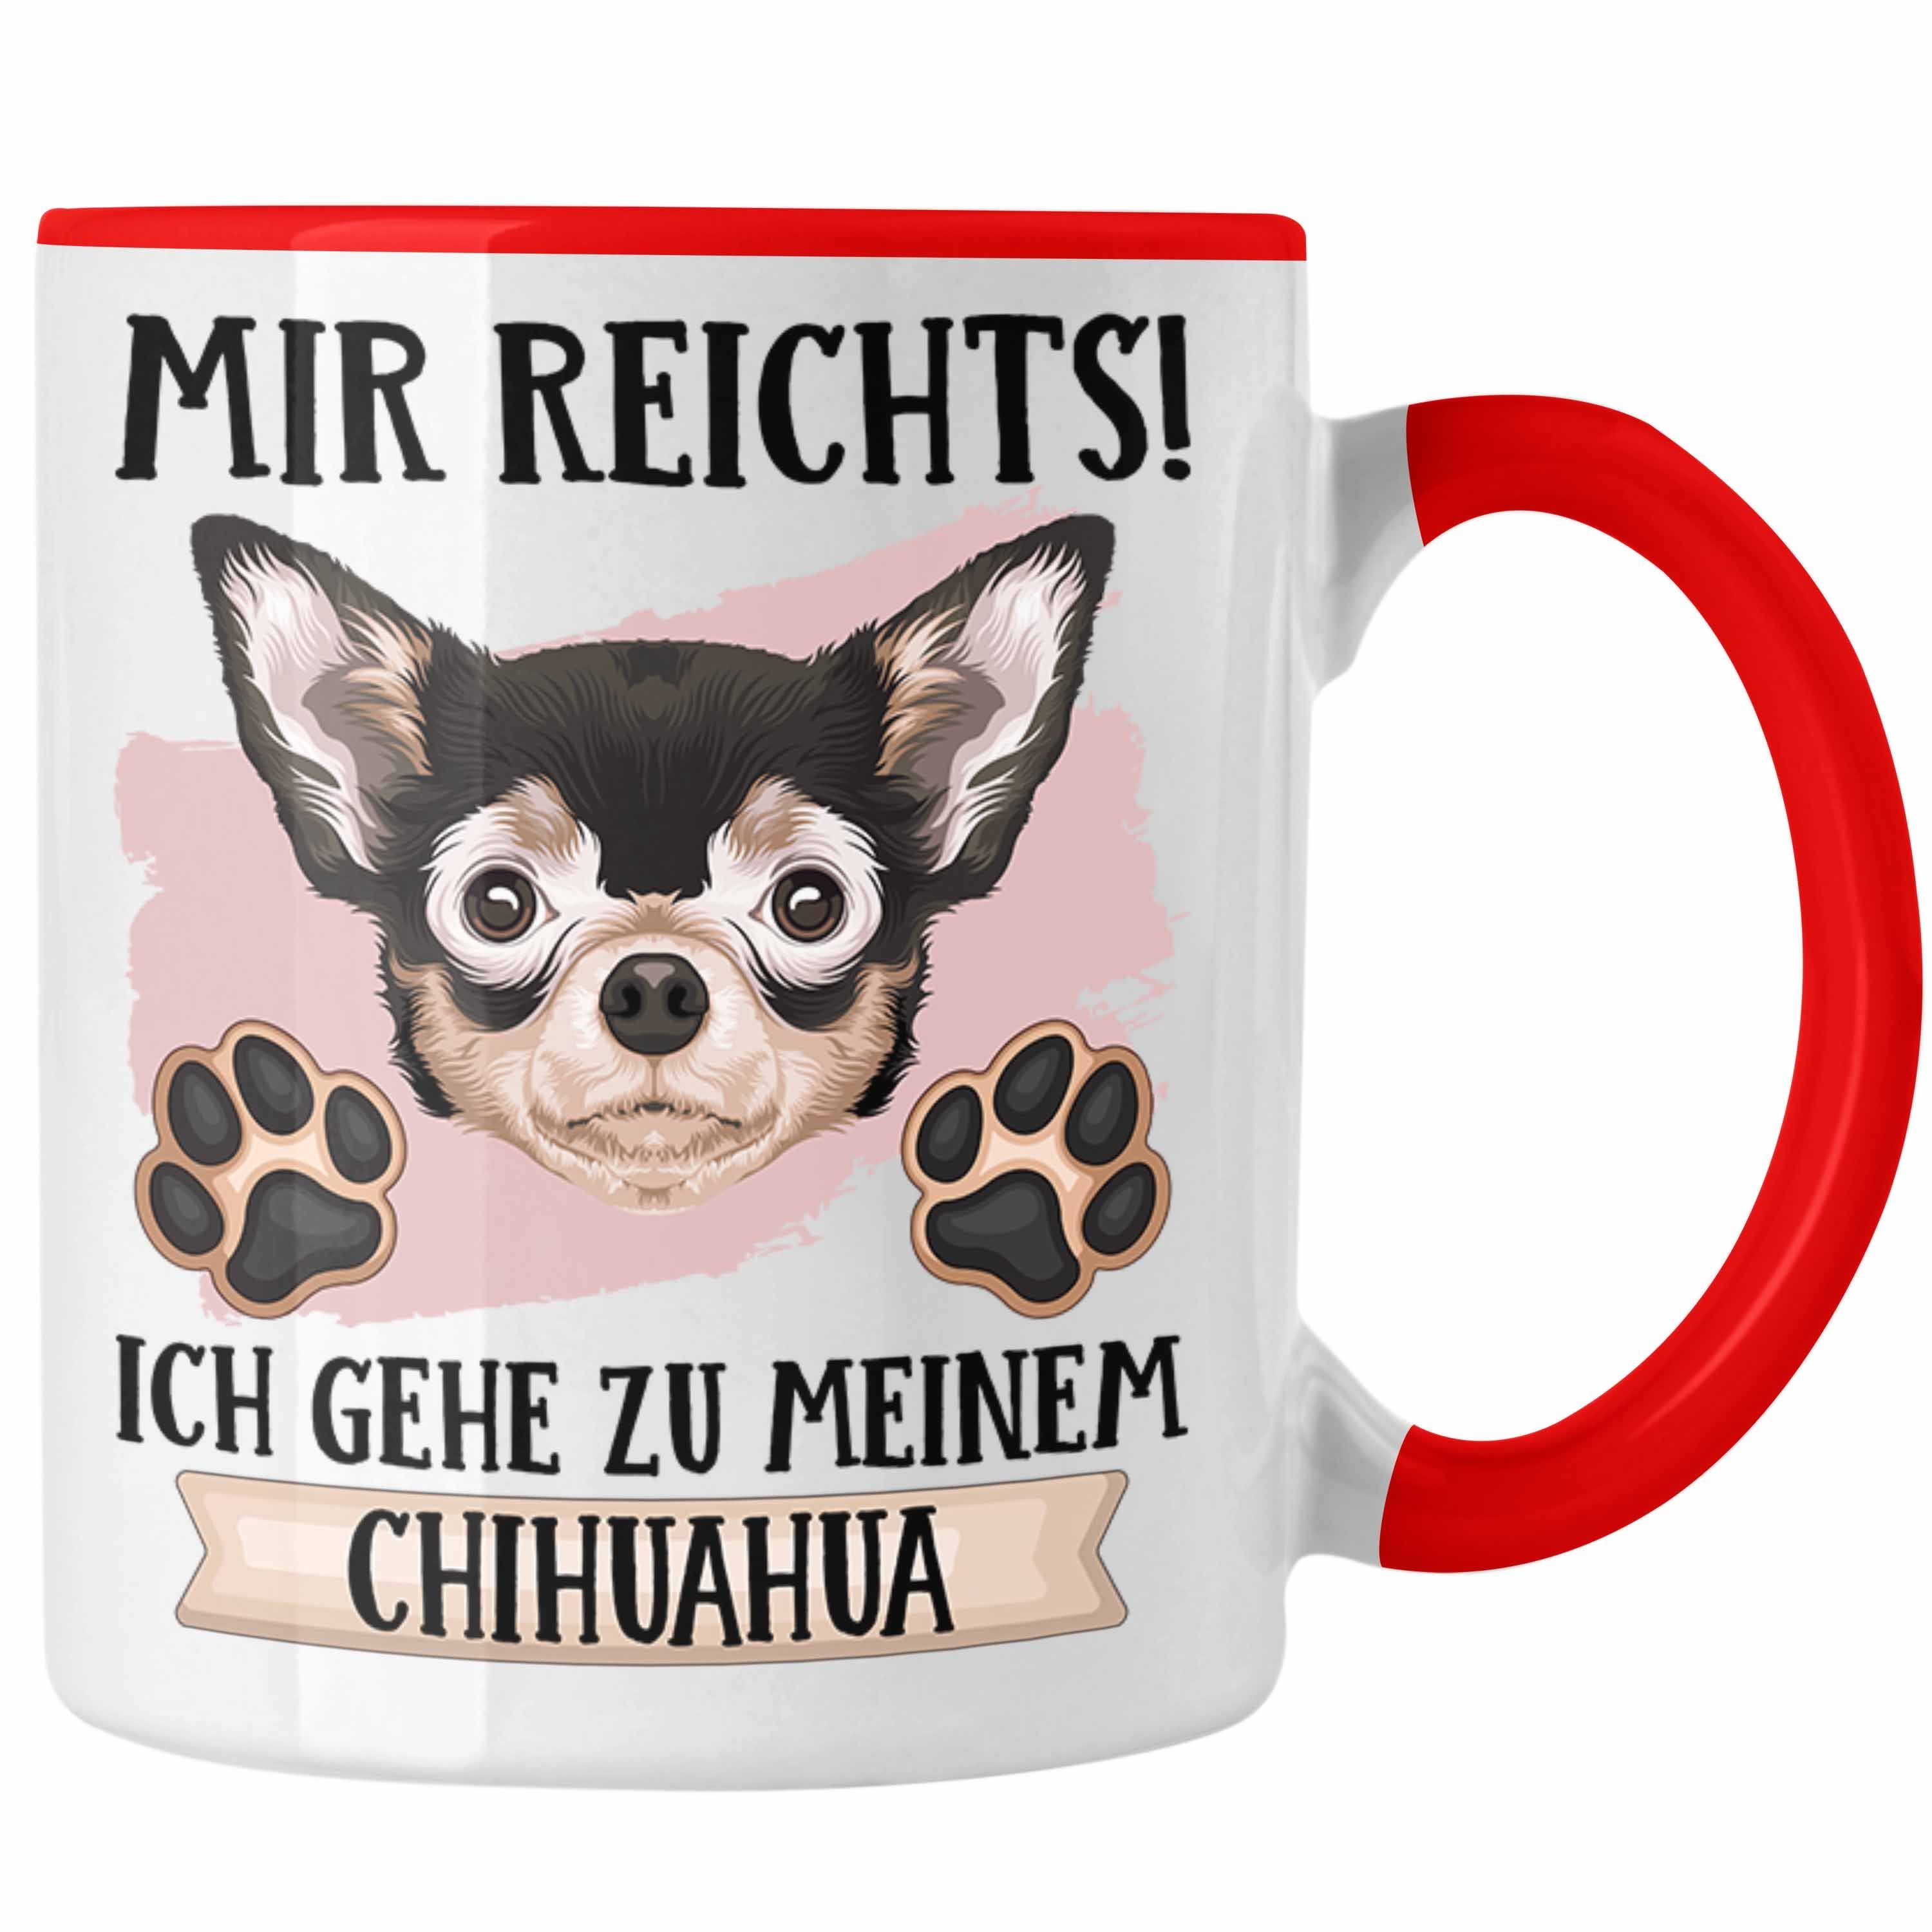 Neue Artikel sind eingetroffen 1 Trendation Tasse Chihuahua Rot Besitzer Geschenkidee Geschenk Tasse Rei Spruch Mir Lustiger